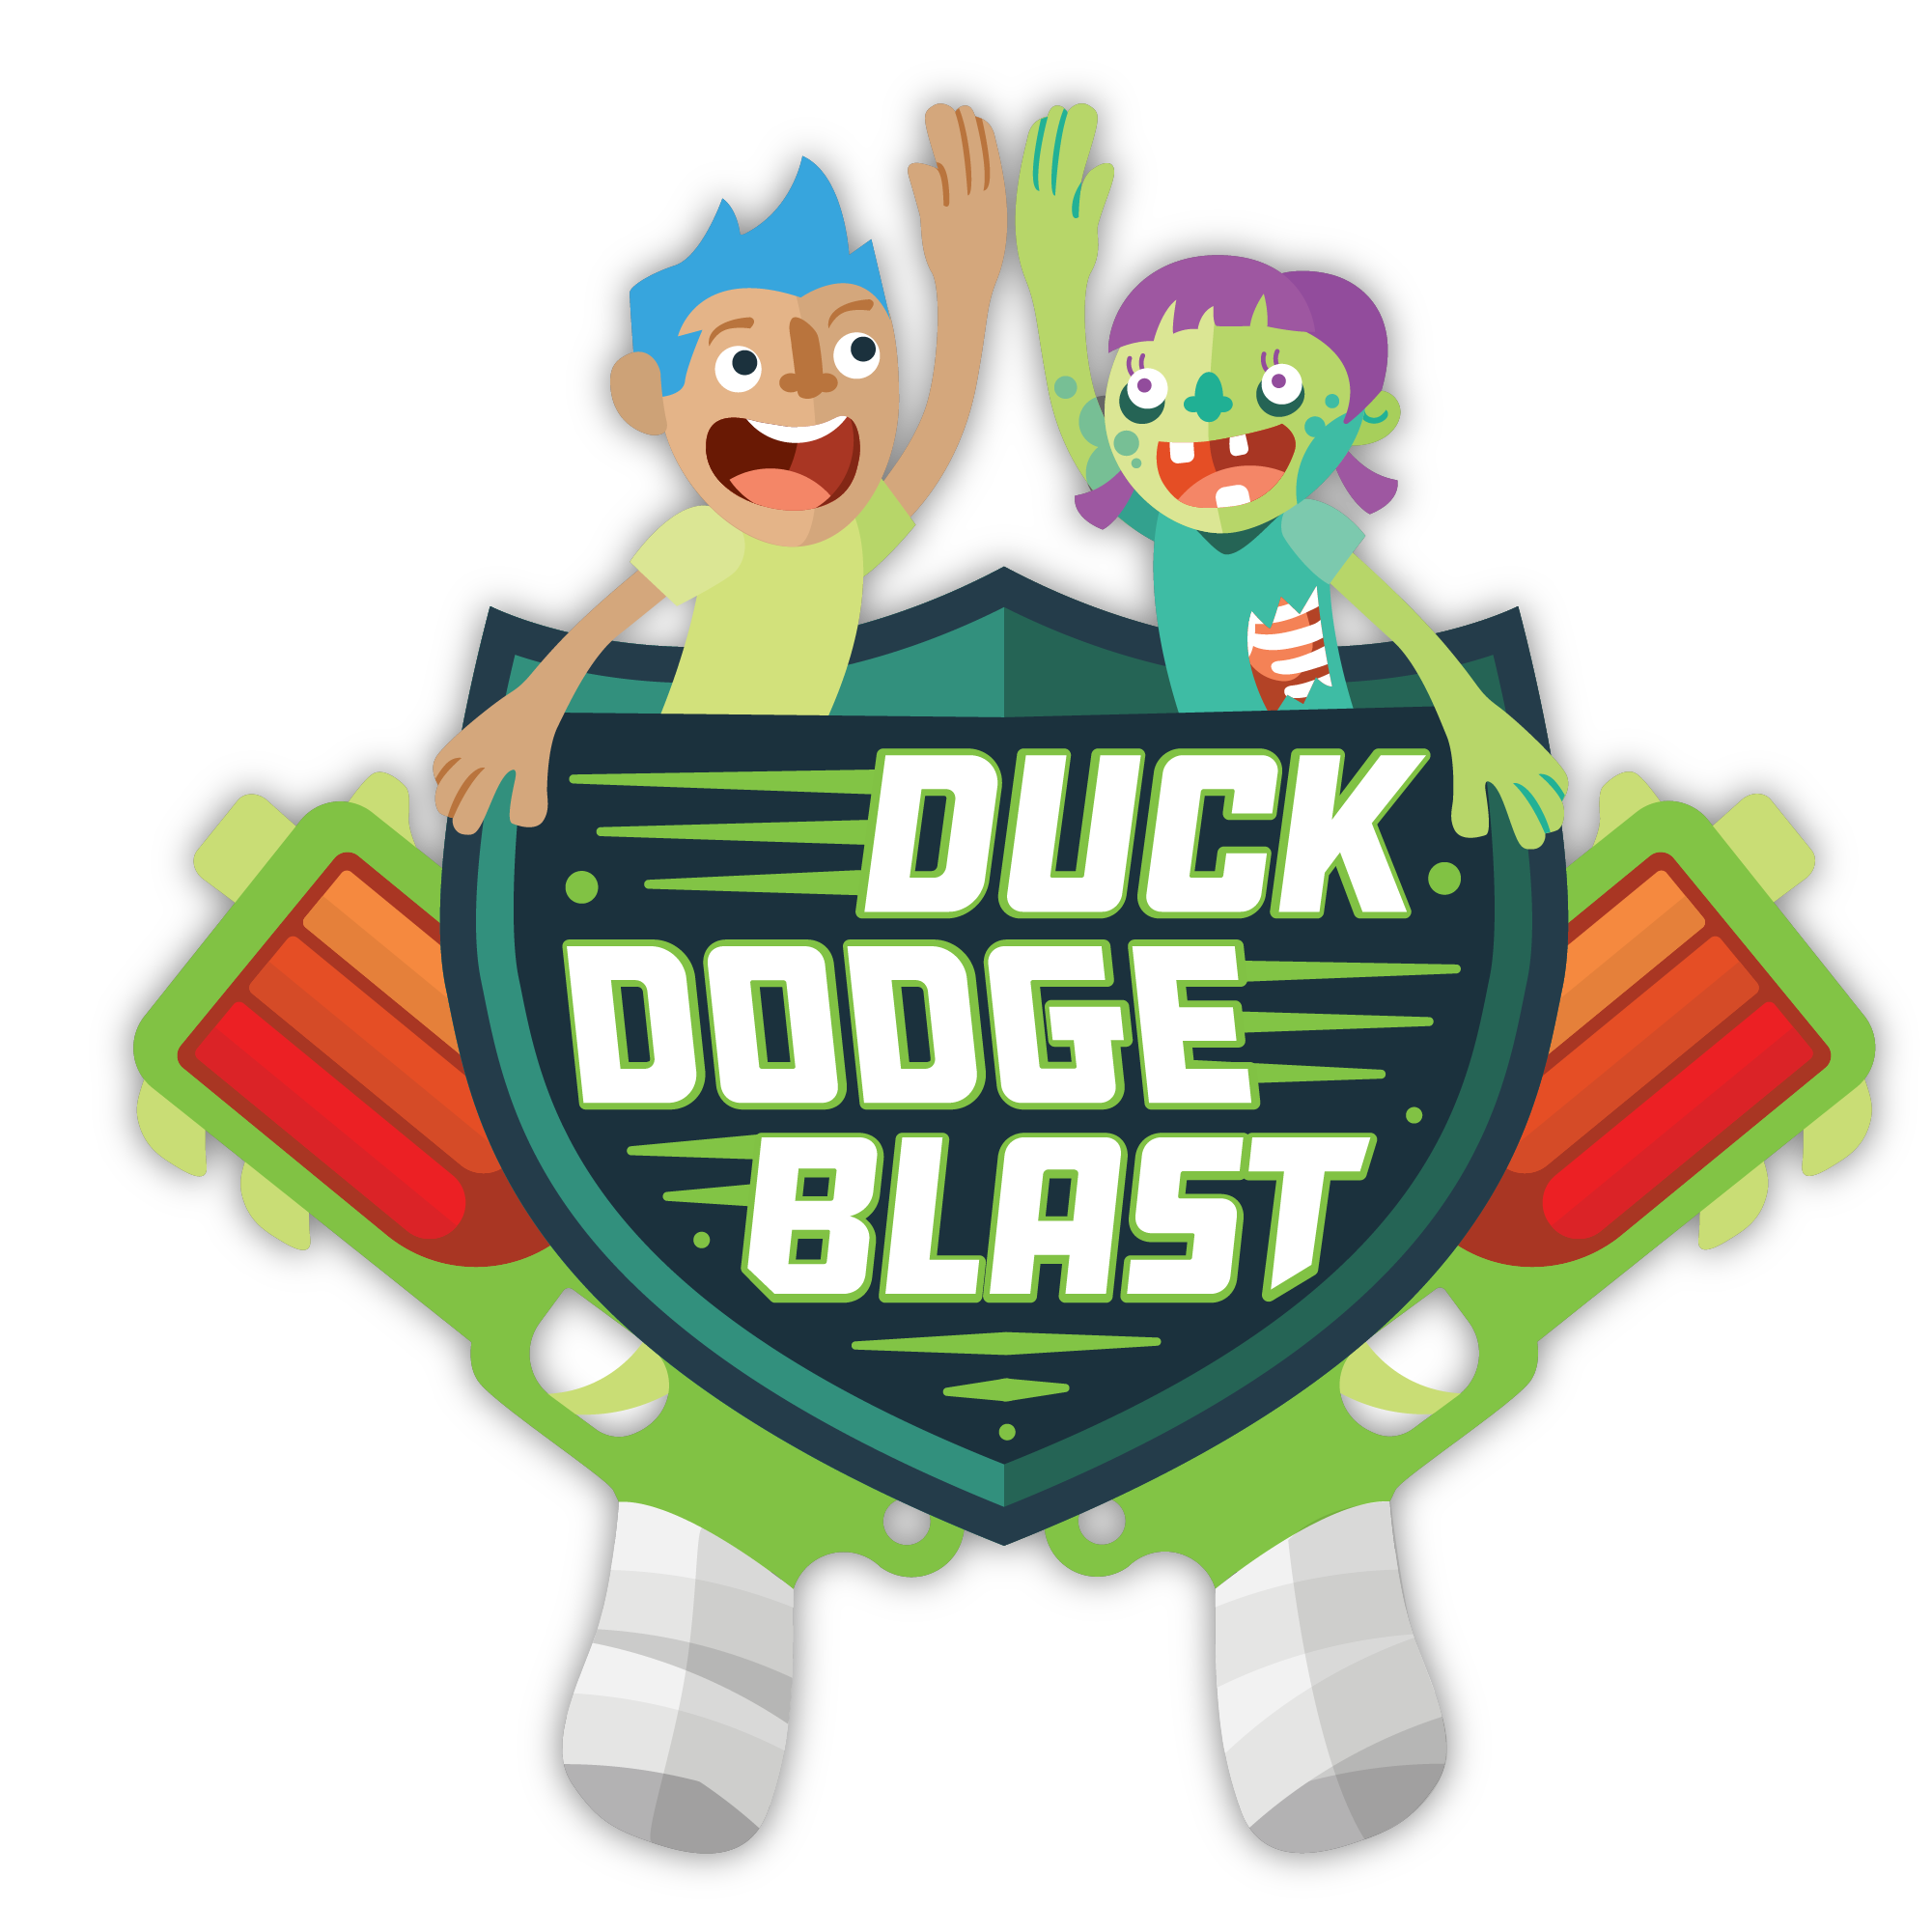 NERF Party - Duck, Dodge, Blast!